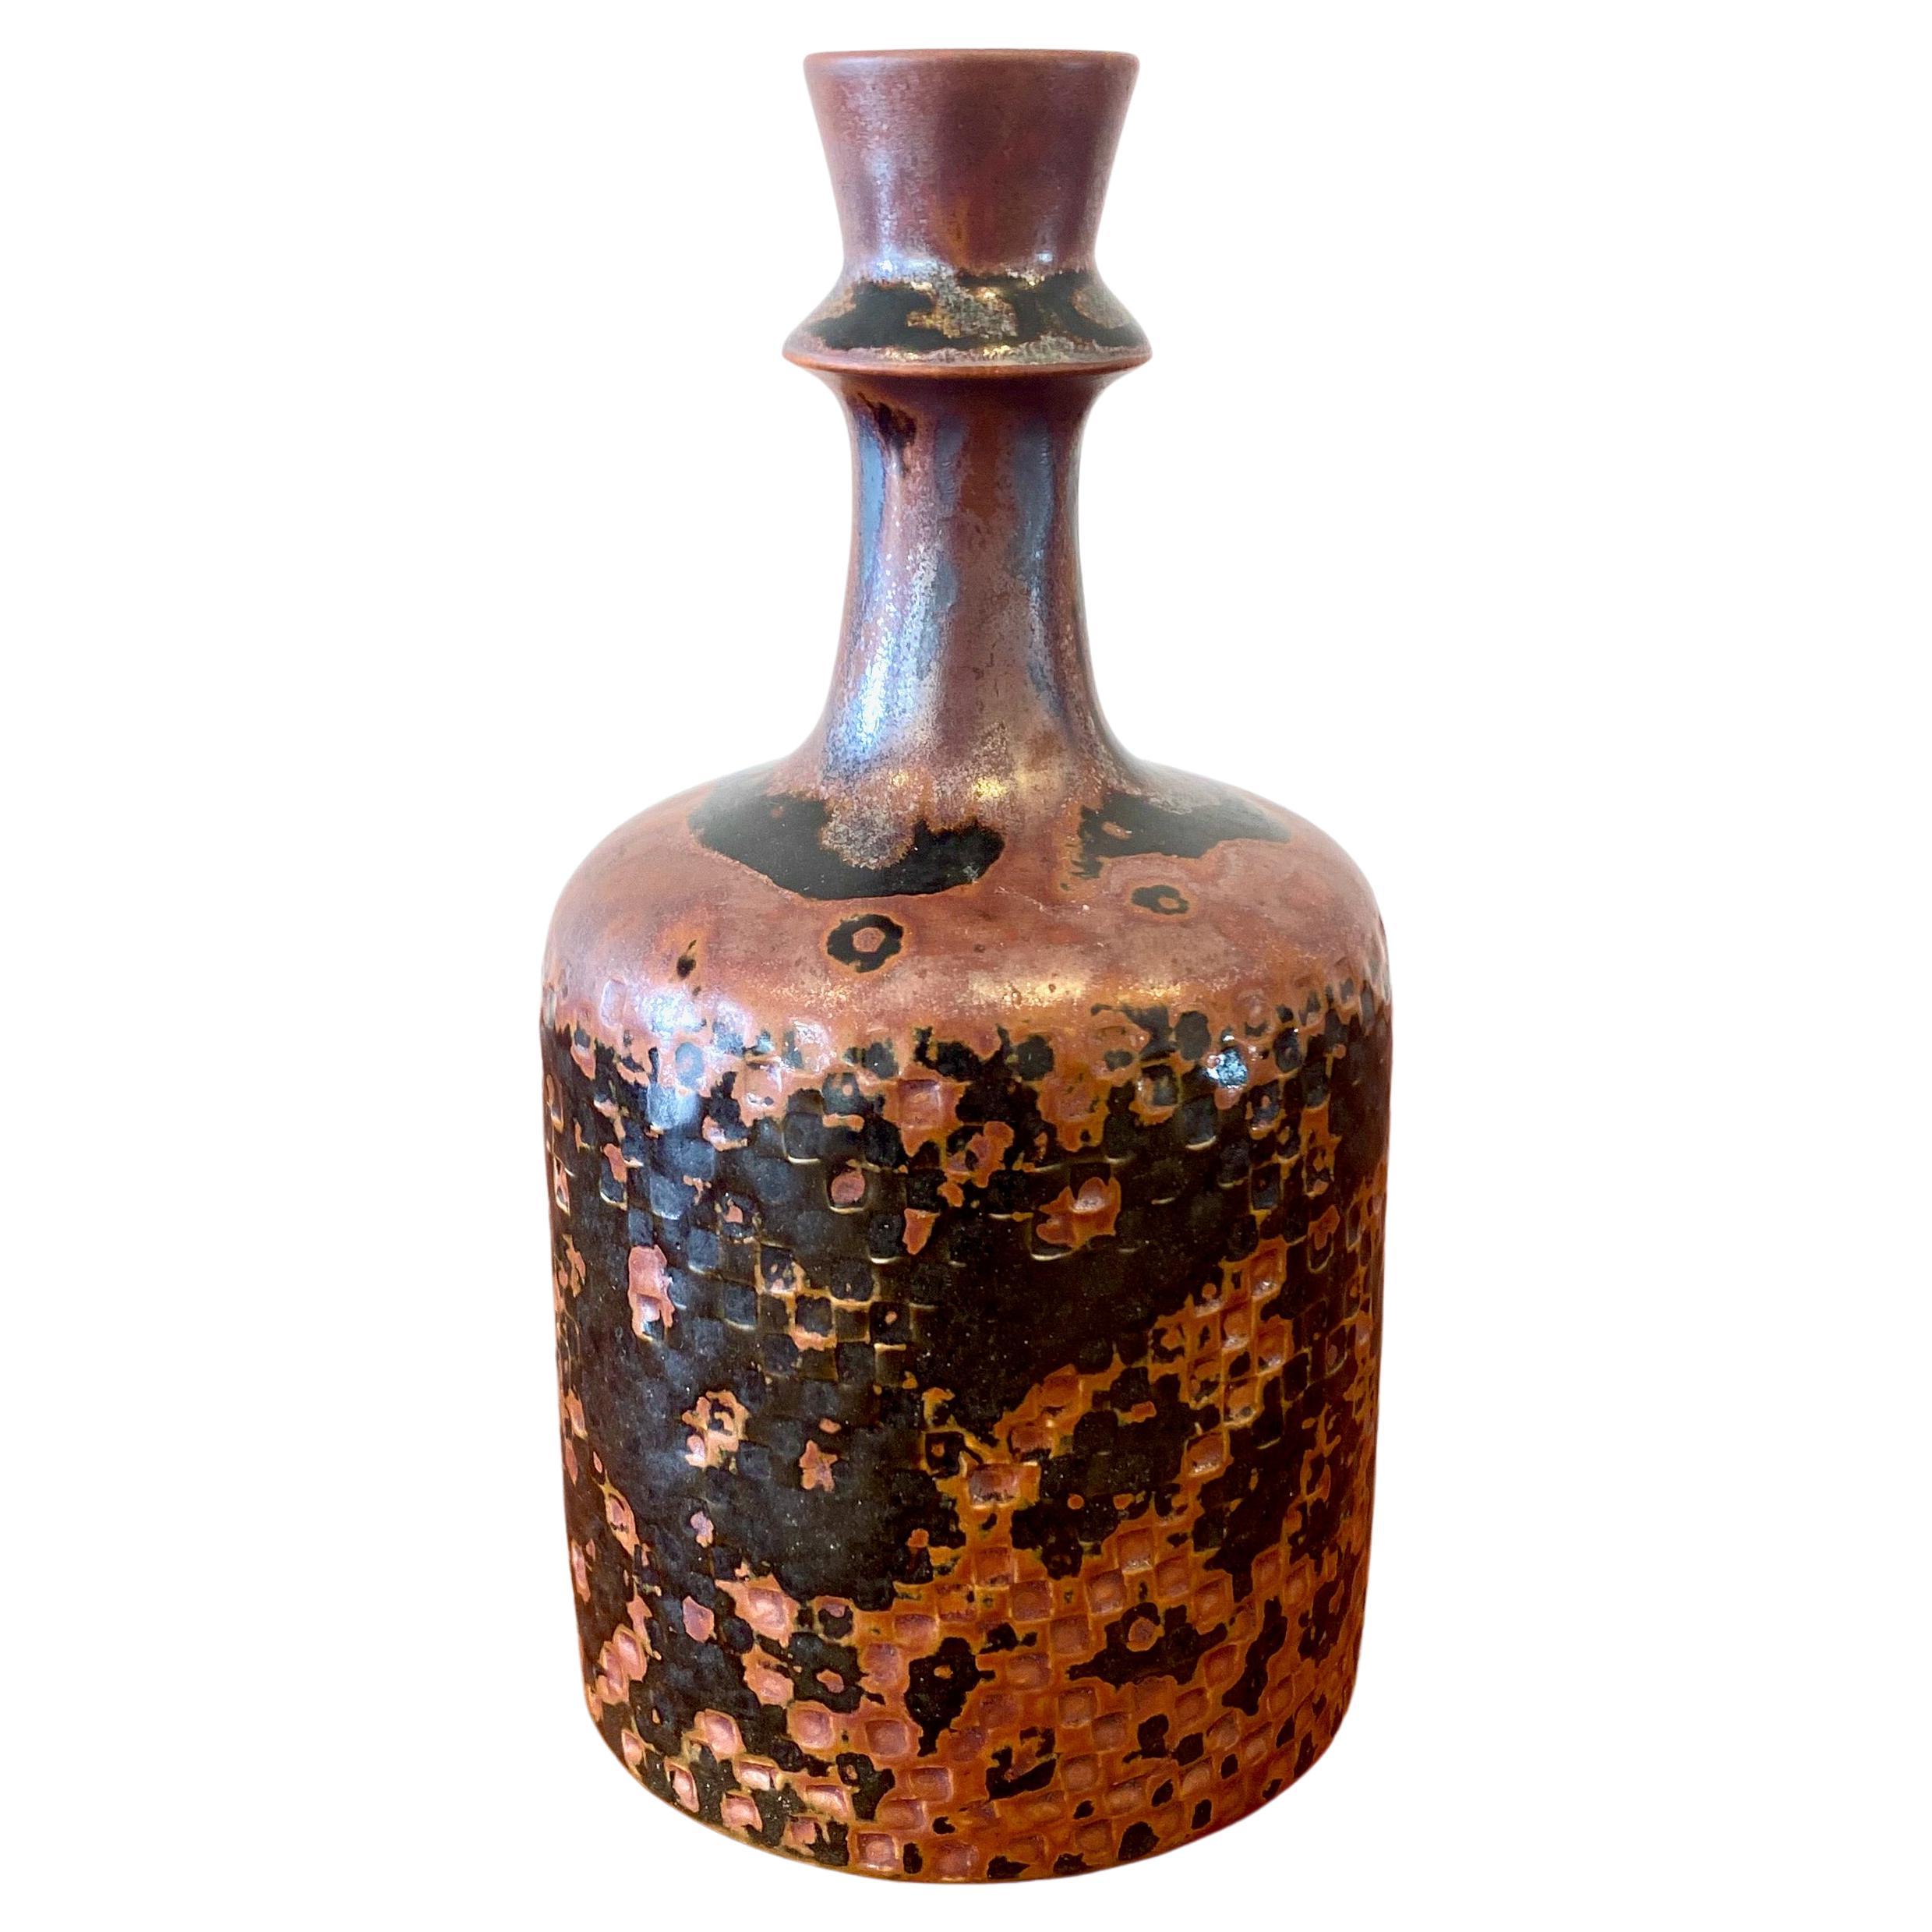 Tenmoku glazed vase by Stig Lindberg for Gustavsberg 1975